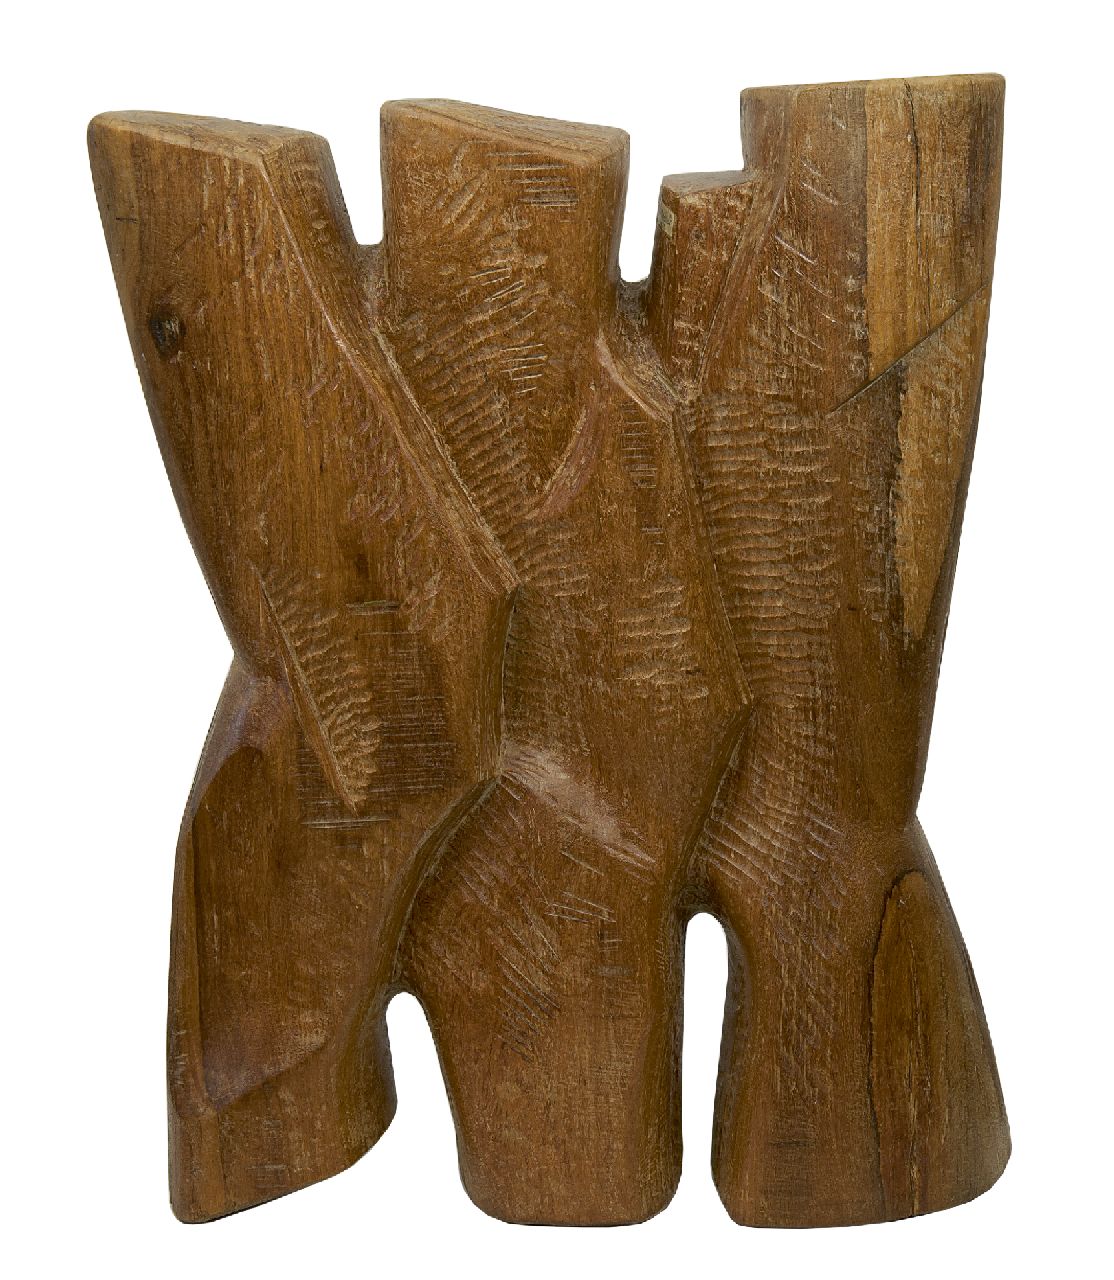 Dolf Breetvelt | Drie-eenheid, hout, 60,5 x 47,0 cm, gesigneerd op achterzijde